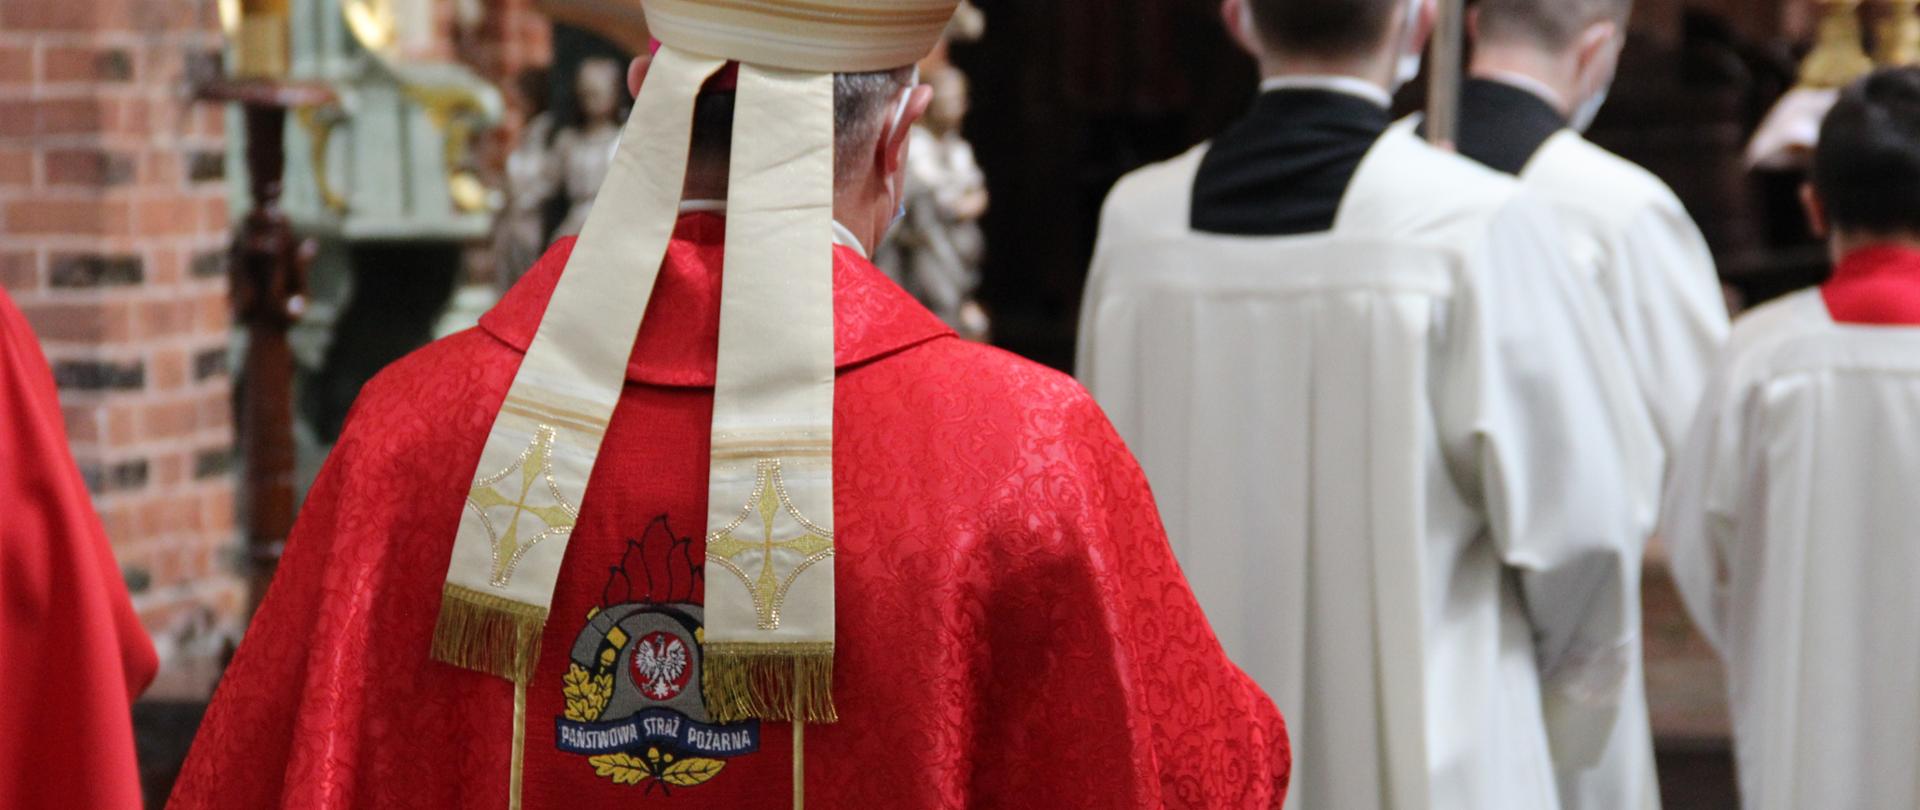 Na zdjęciu biskup, odziany w szatę z logo PSP na plecach - w trakcie procesji do ołtarza.